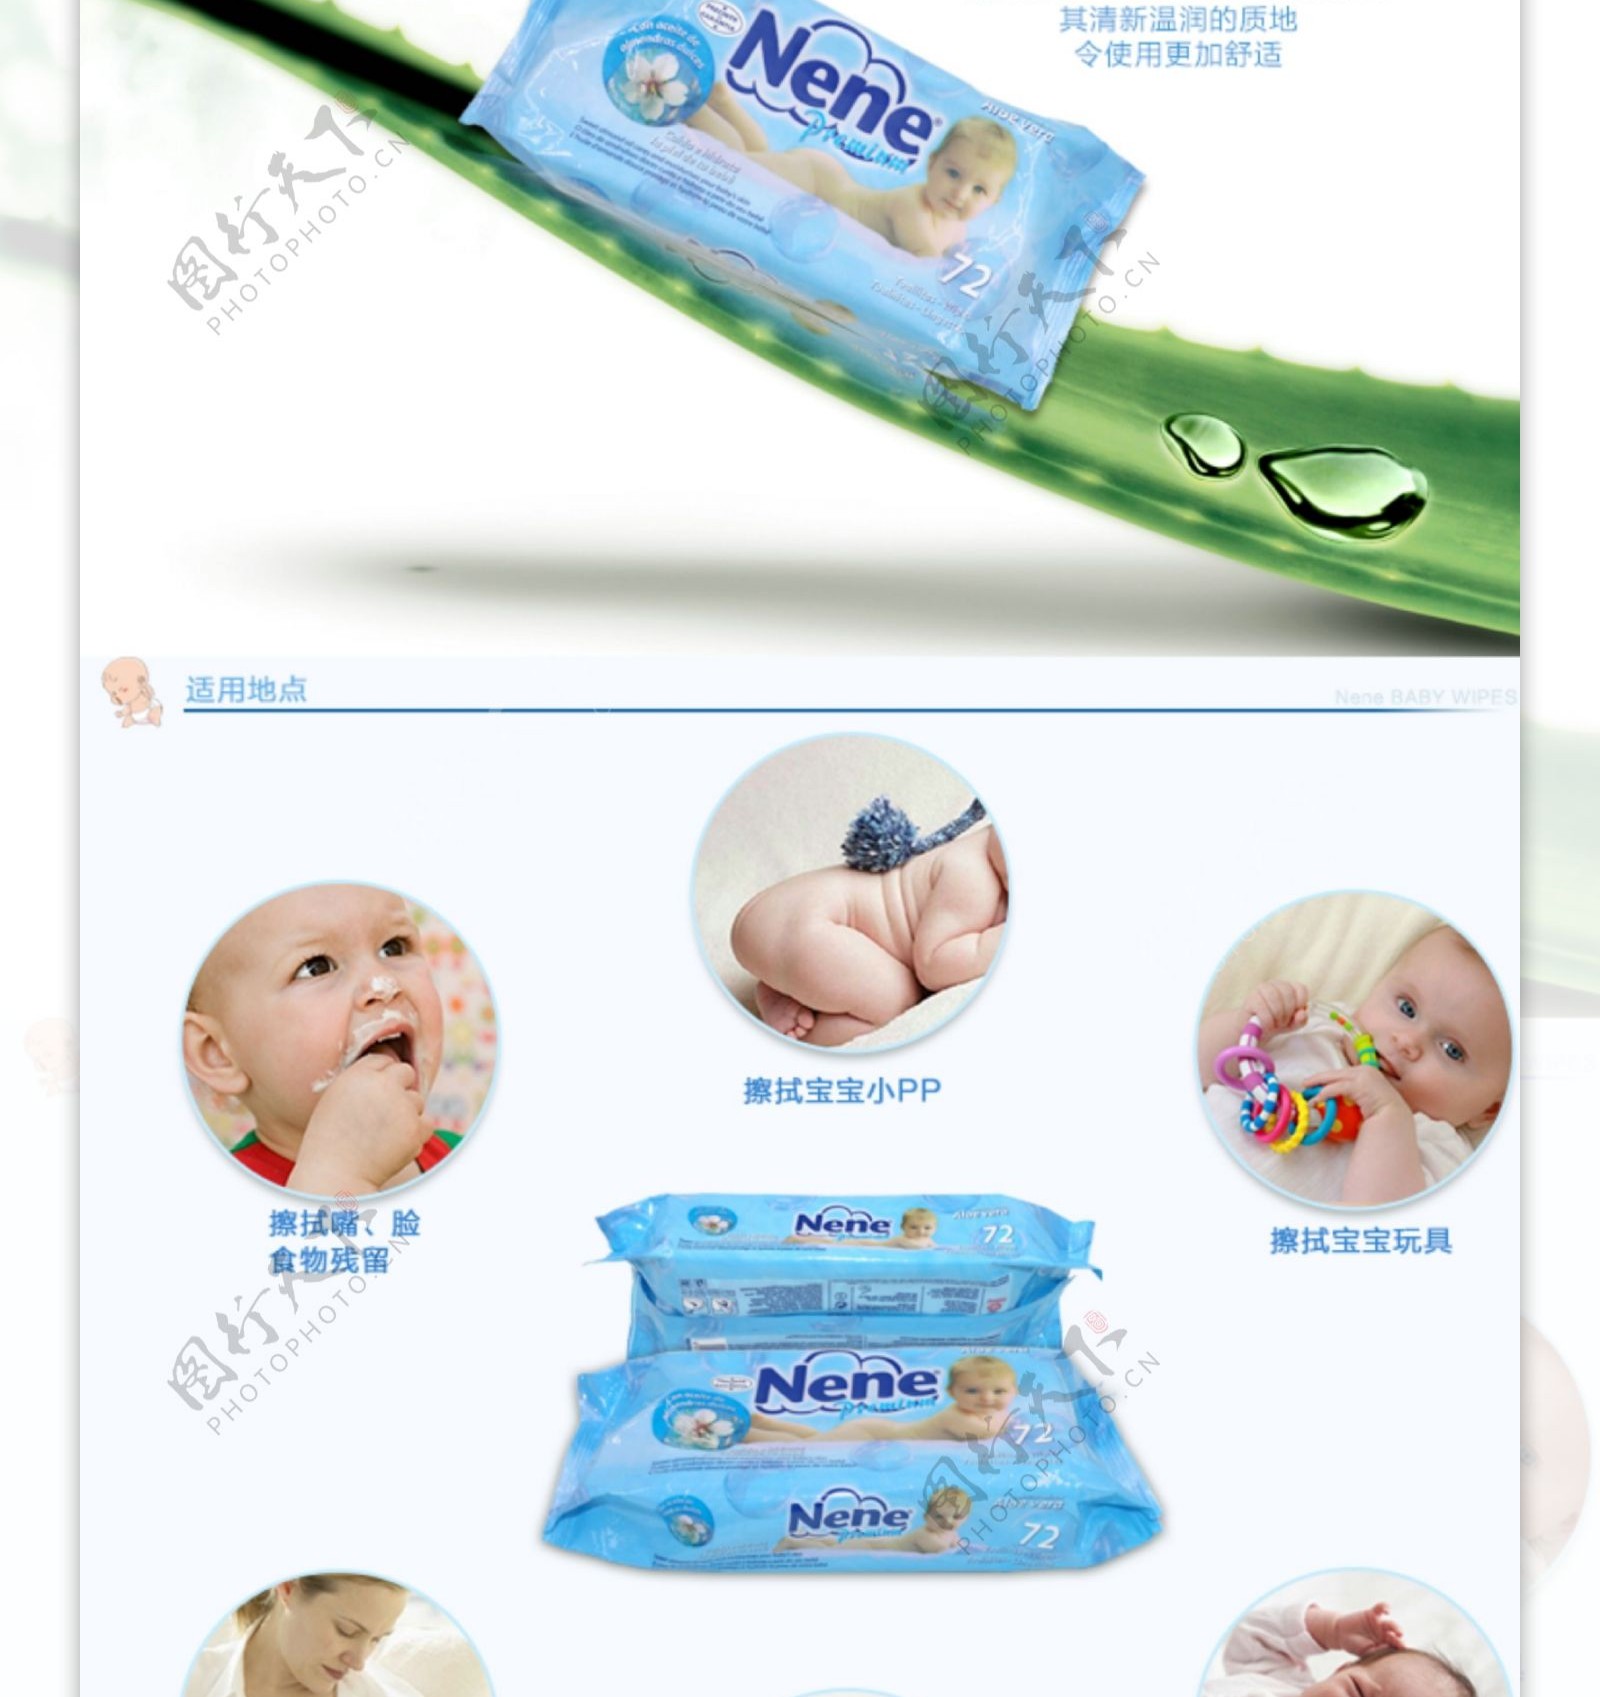 婴儿专用湿巾详情页